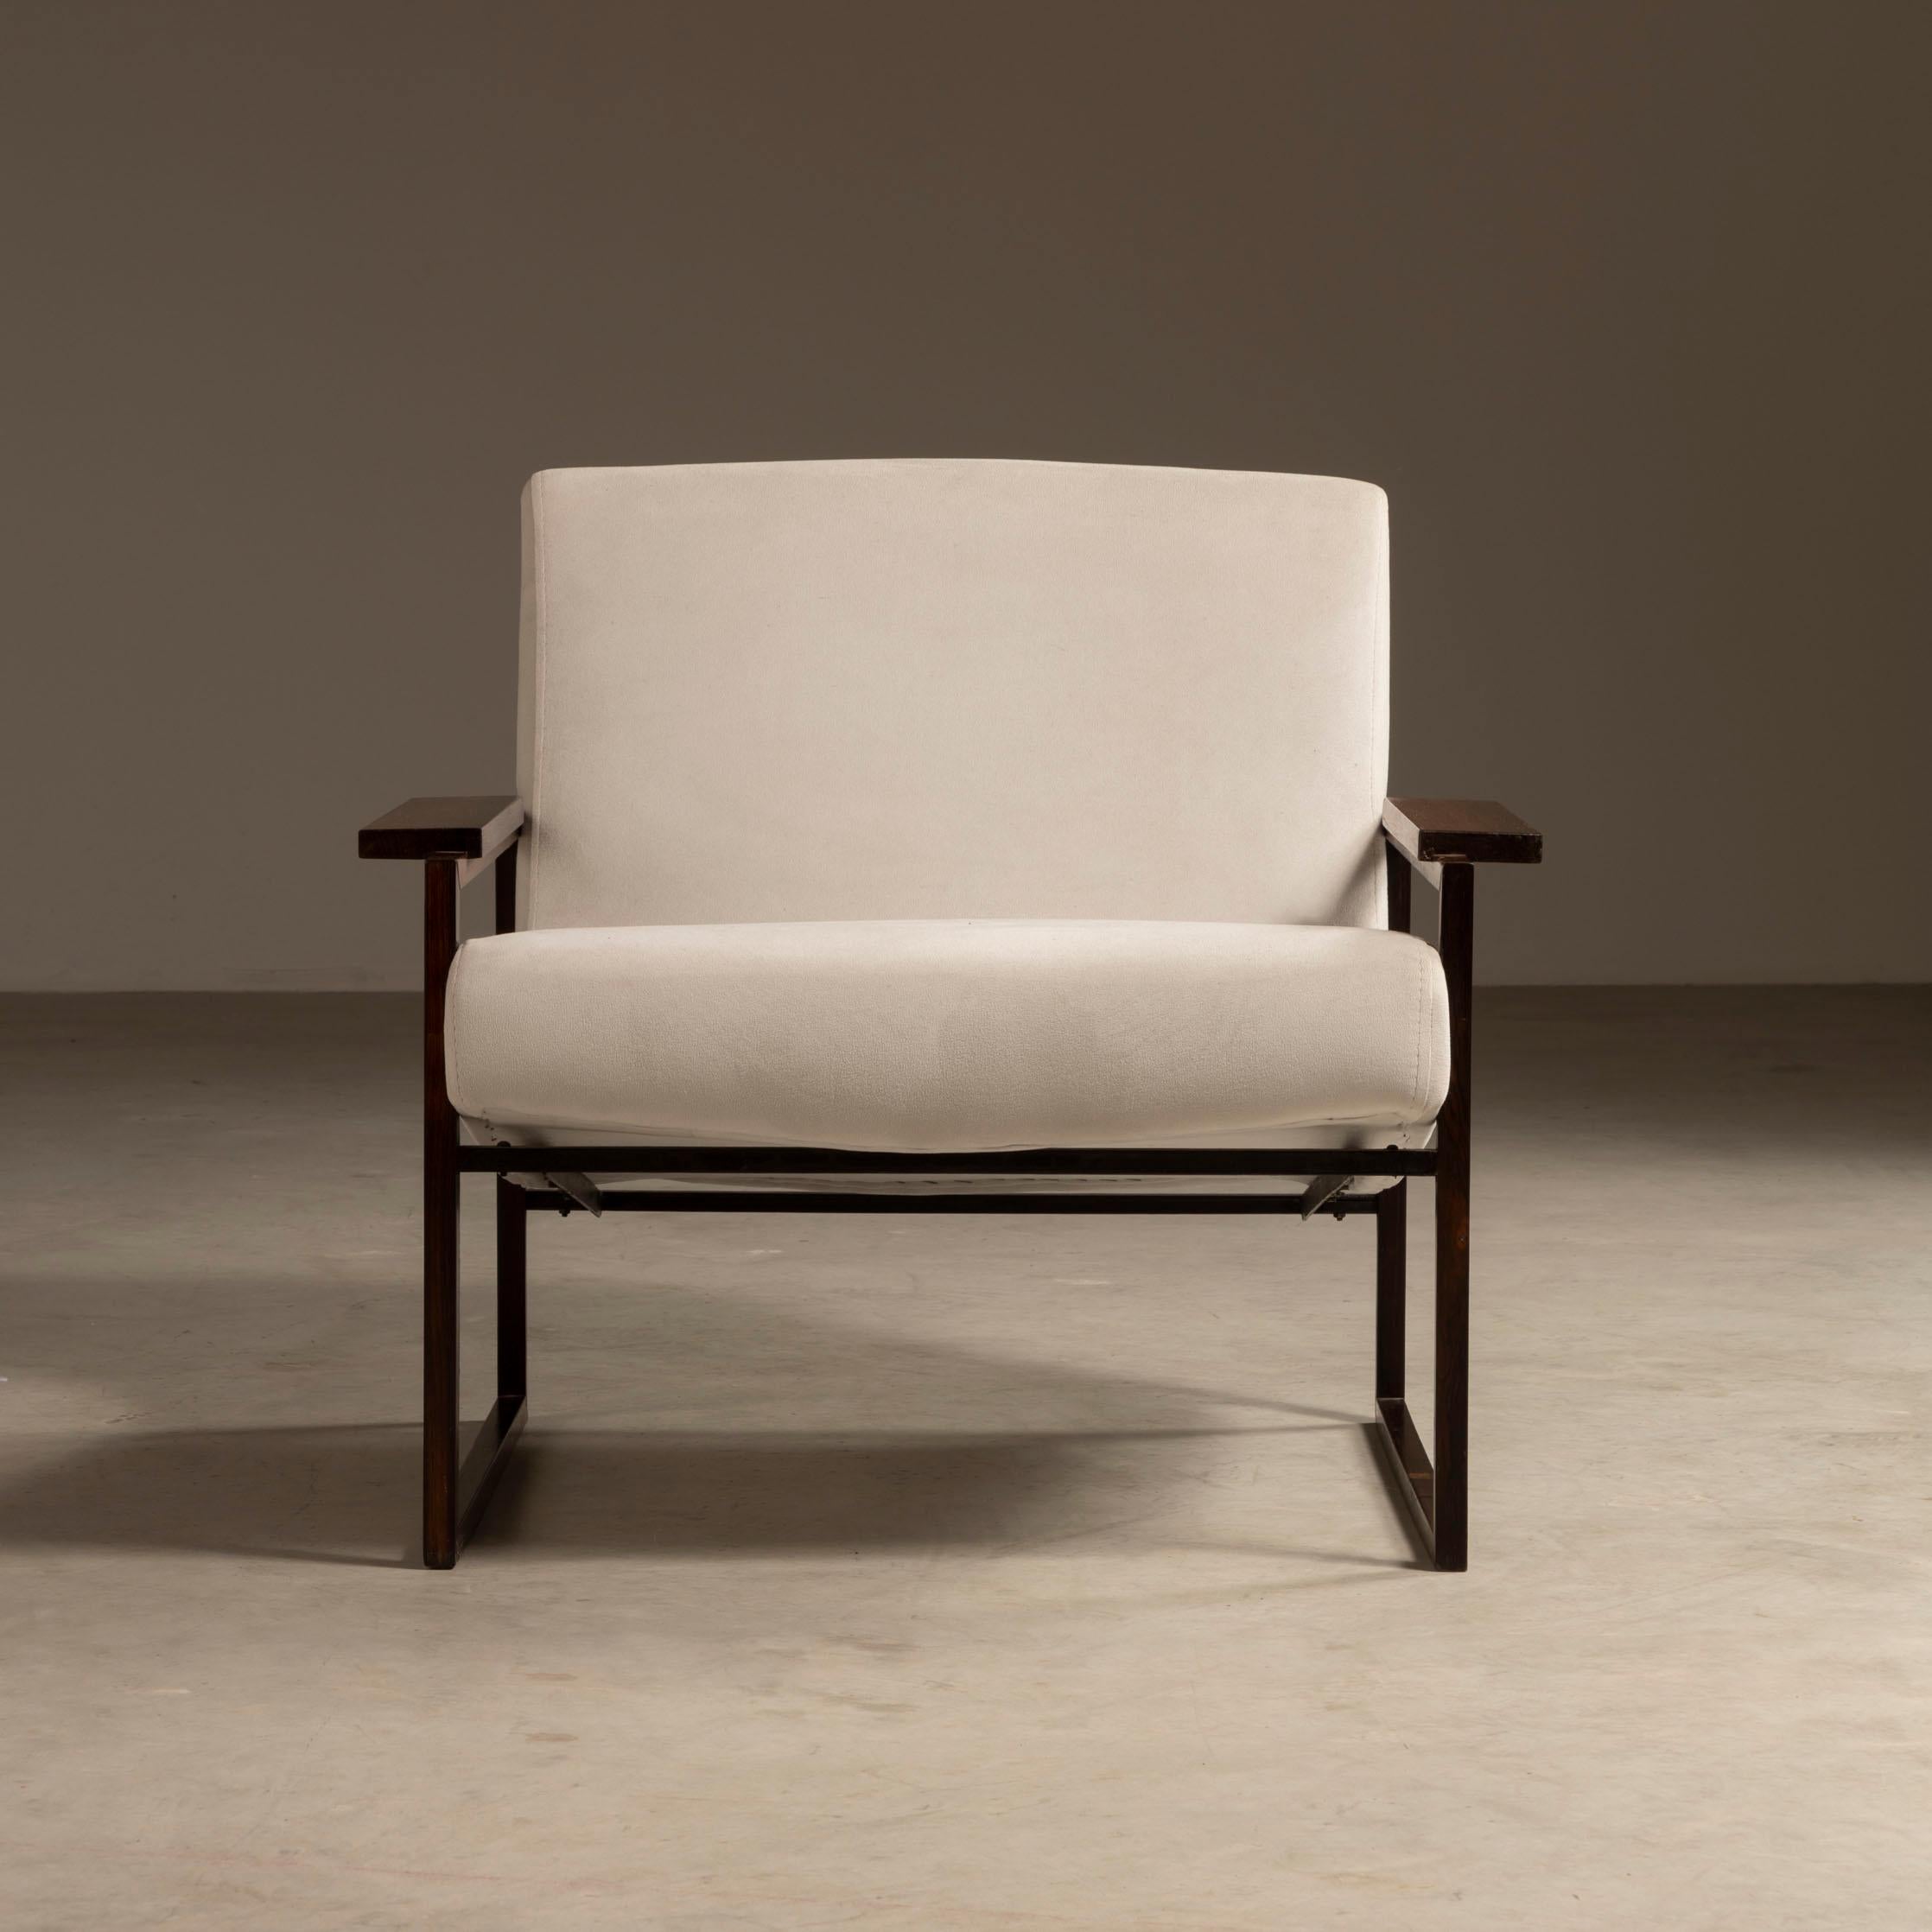 Le fauteuil MP-05 est un exemple exceptionnel de la vision créative de l'architecte et designer brésilien Percival Lafer. Conçu à l'origine comme une variation du fauteuil MP-03, le MP-05 présente une esthétique unique et raffinée, avec une